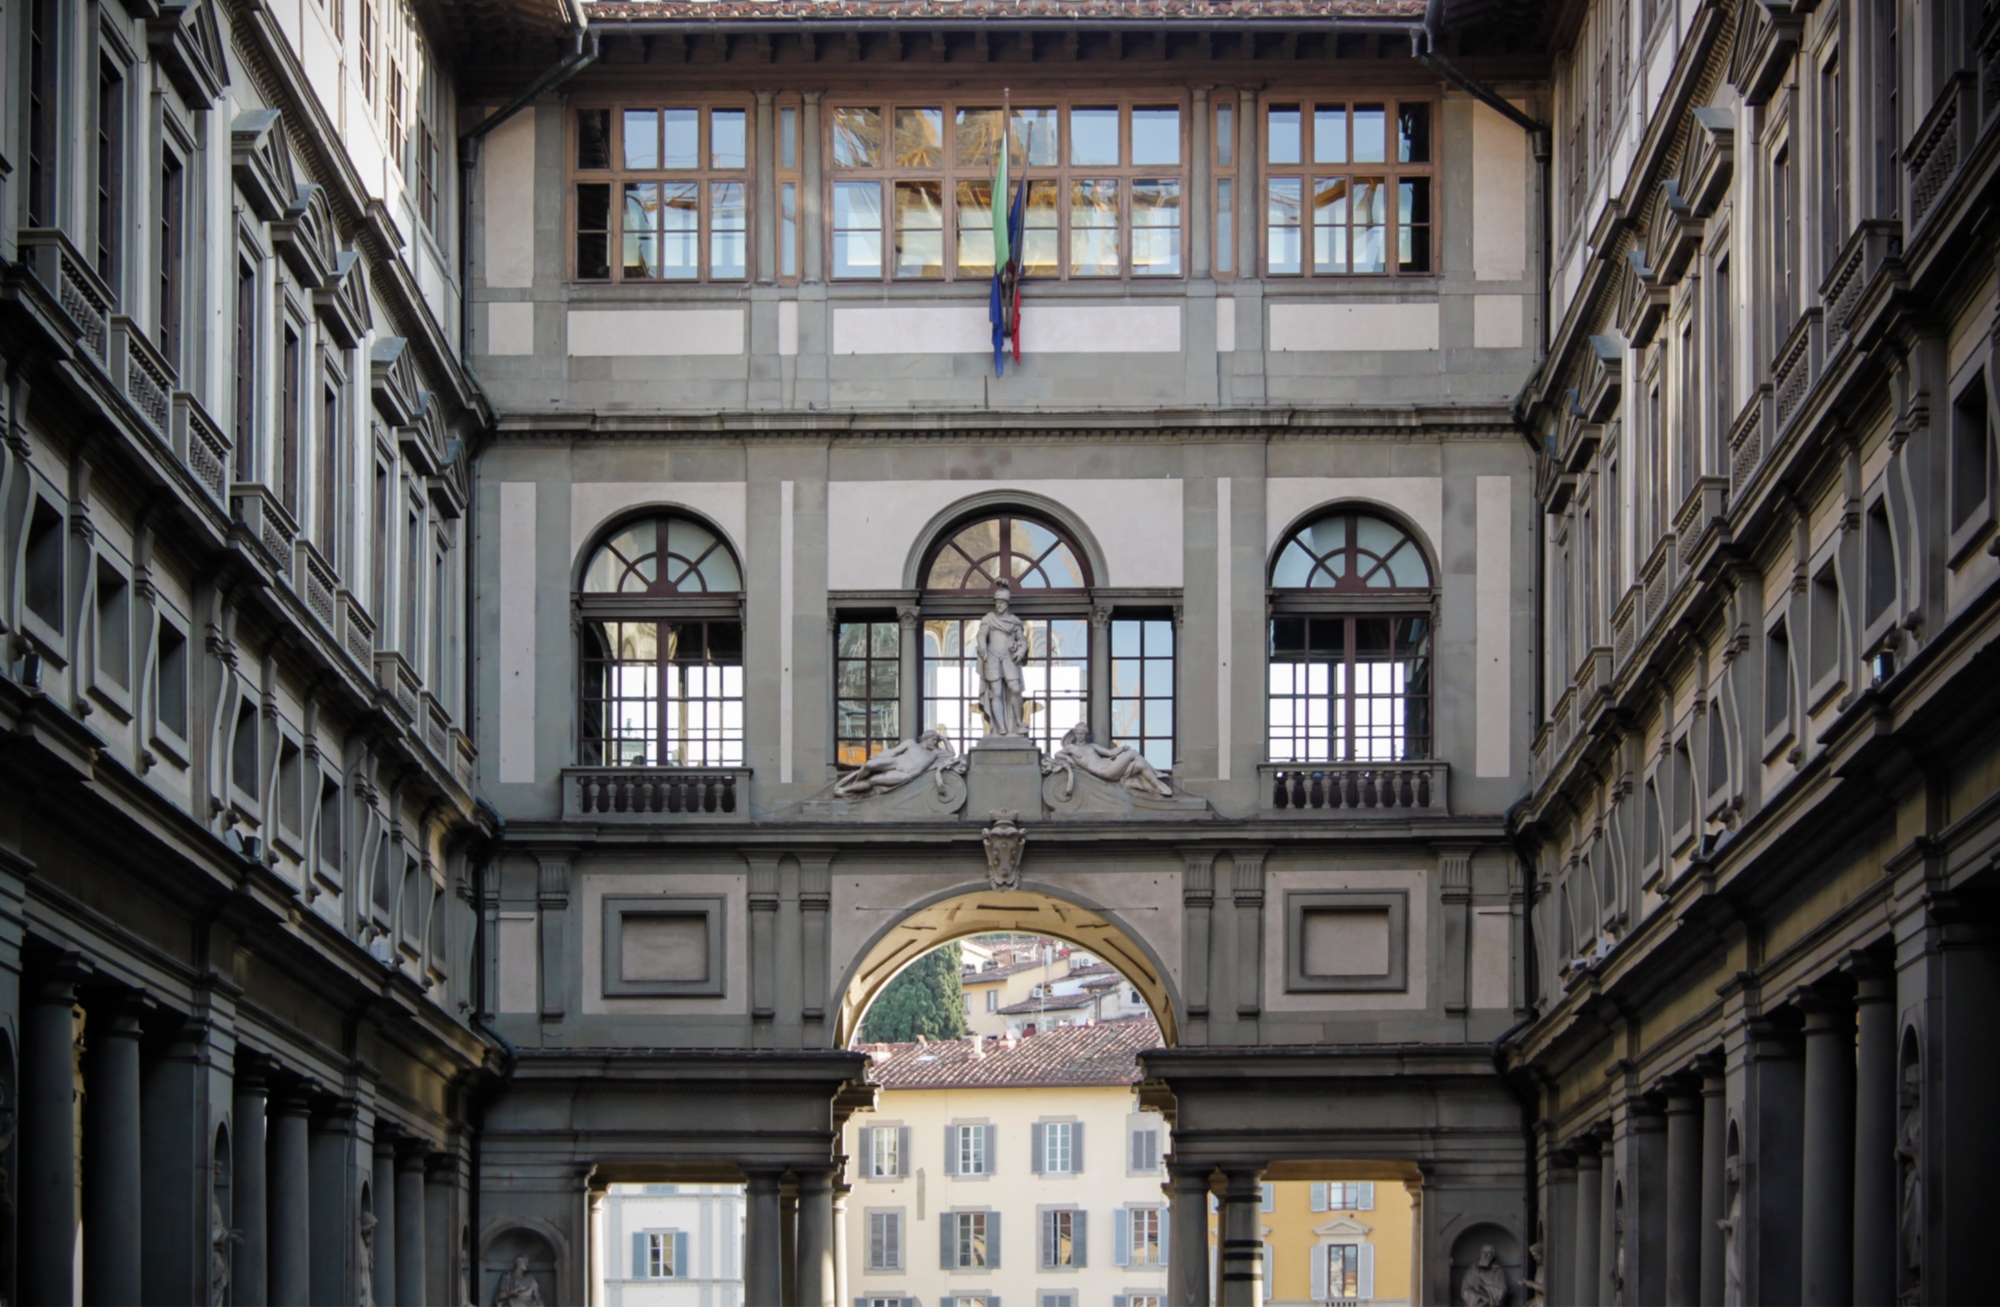 Galería de los Uffizi